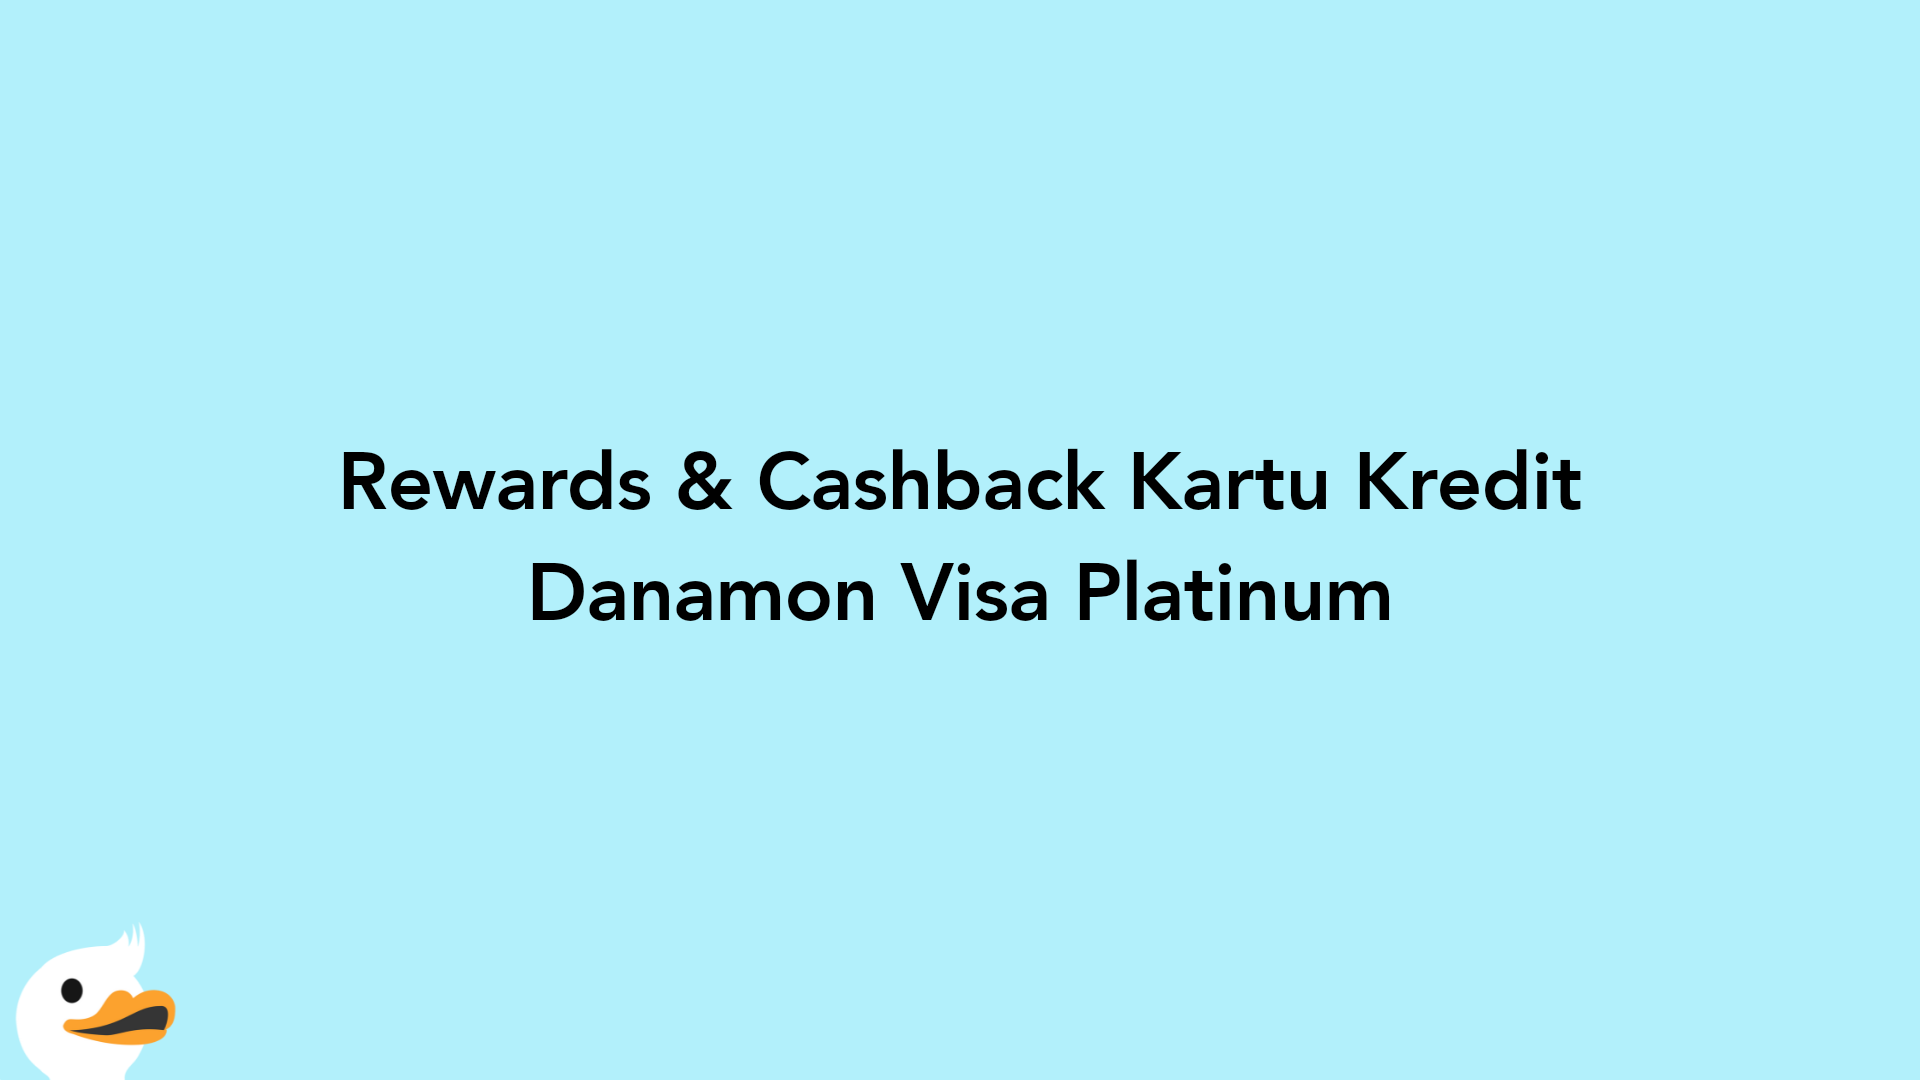 Rewards & Cashback Kartu Kredit Danamon Visa Platinum